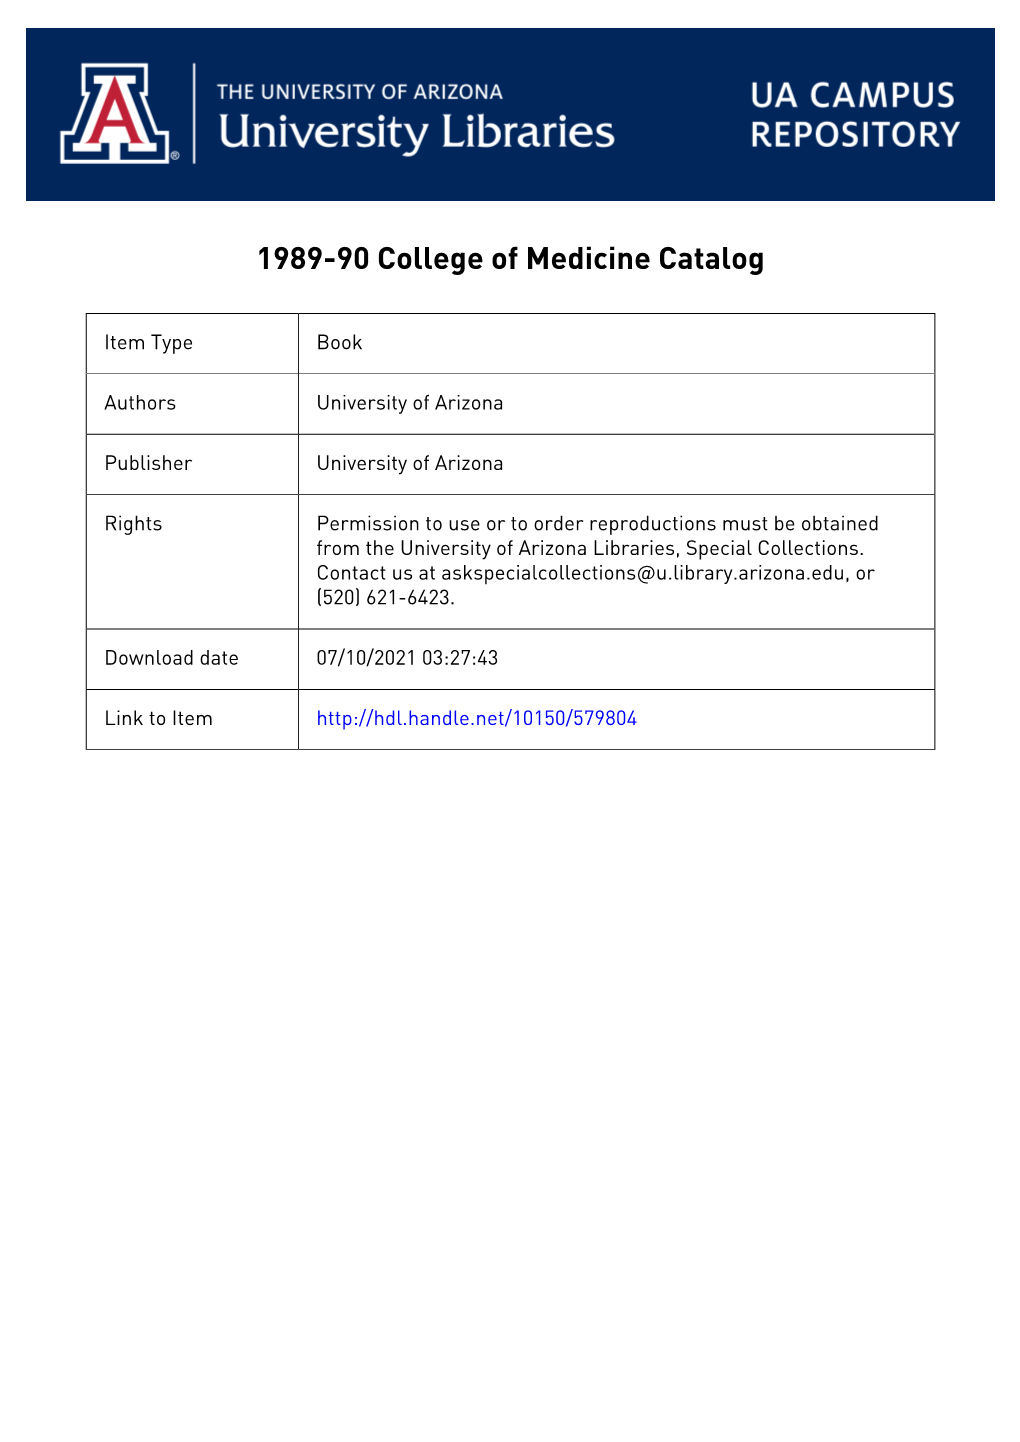 College of Medicine Catalog